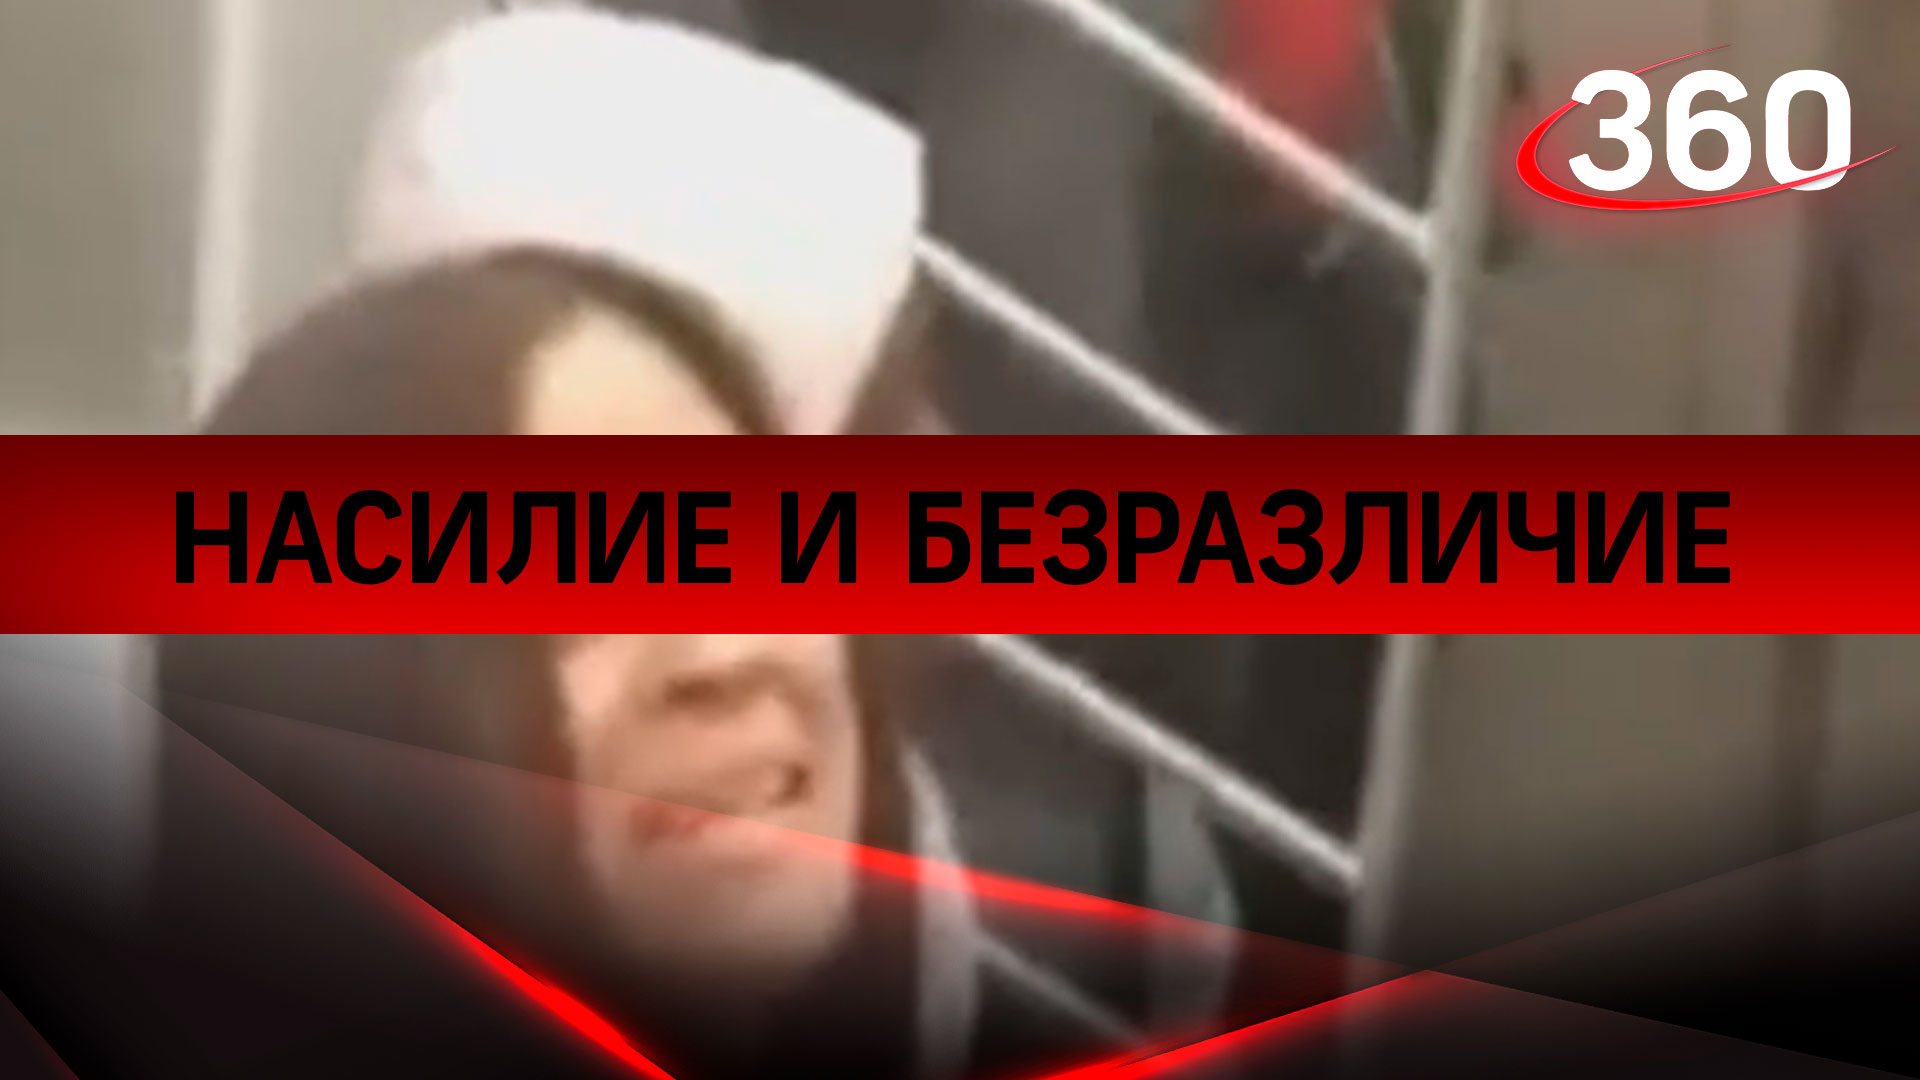 Насилие и безразличие: в метро на девушку напал пассажир-неадекват, никто не вступился